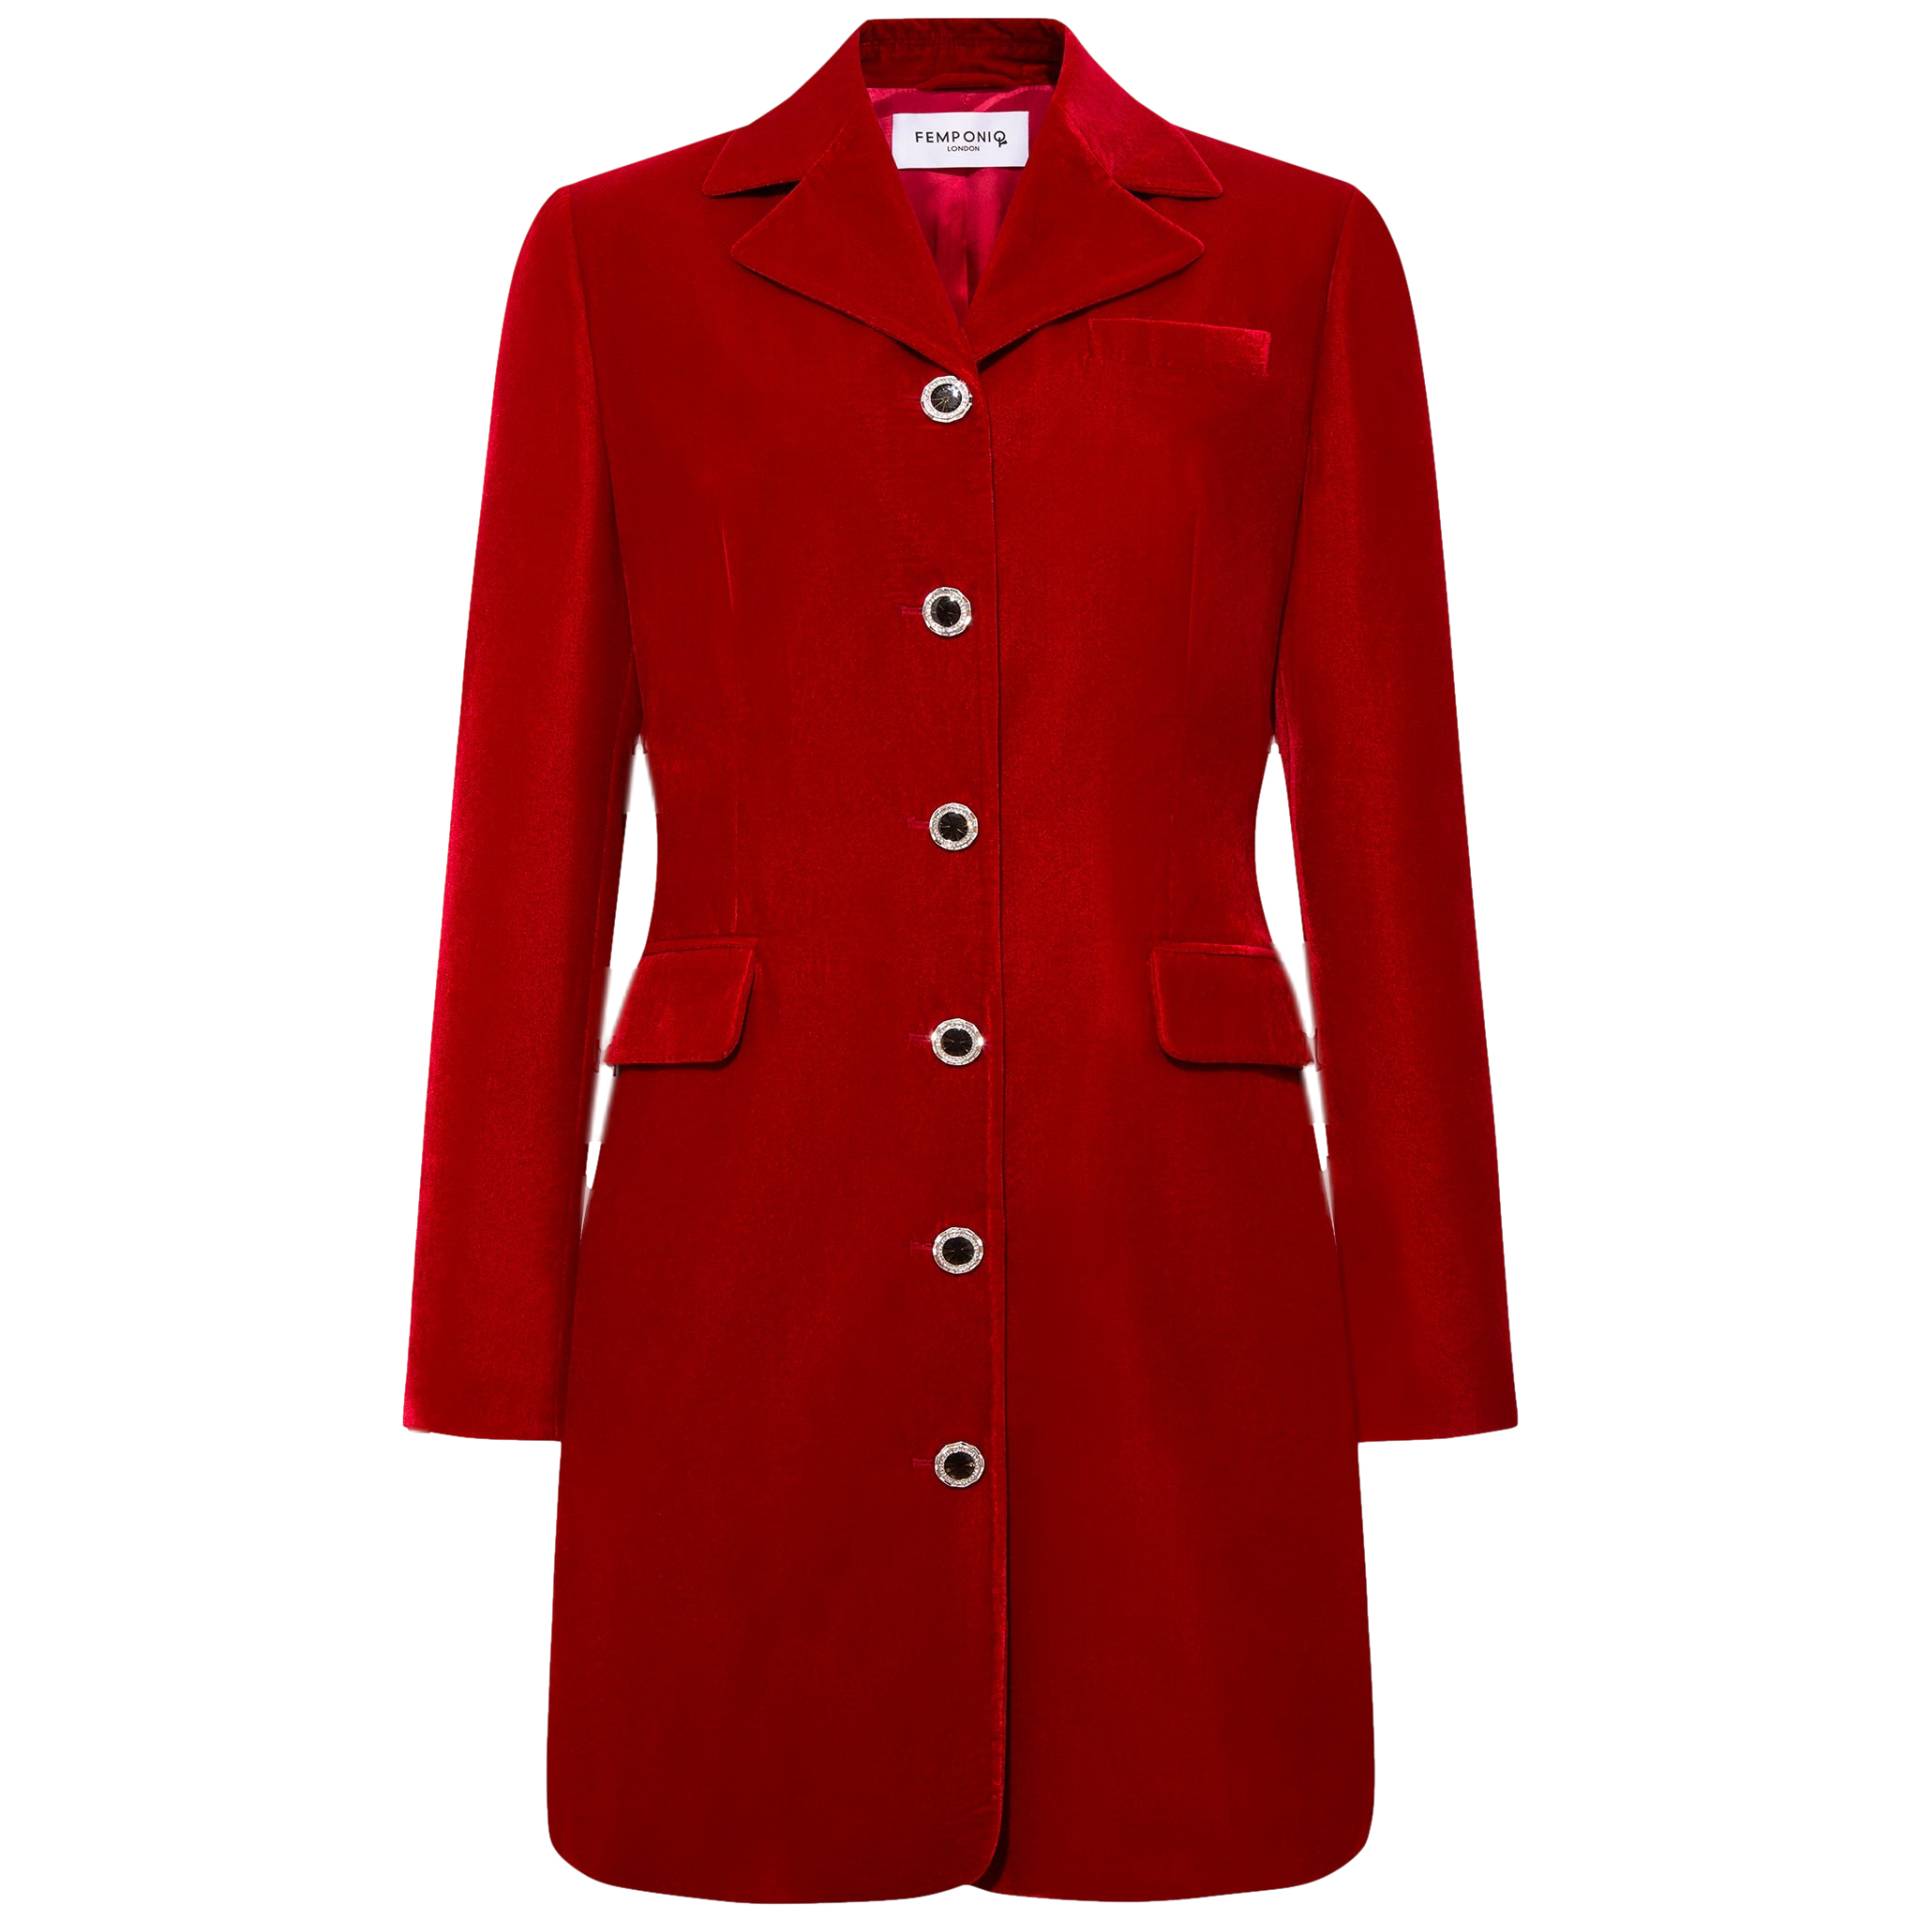 Velvet Tailored Blazer Dress - Red von Femponiq